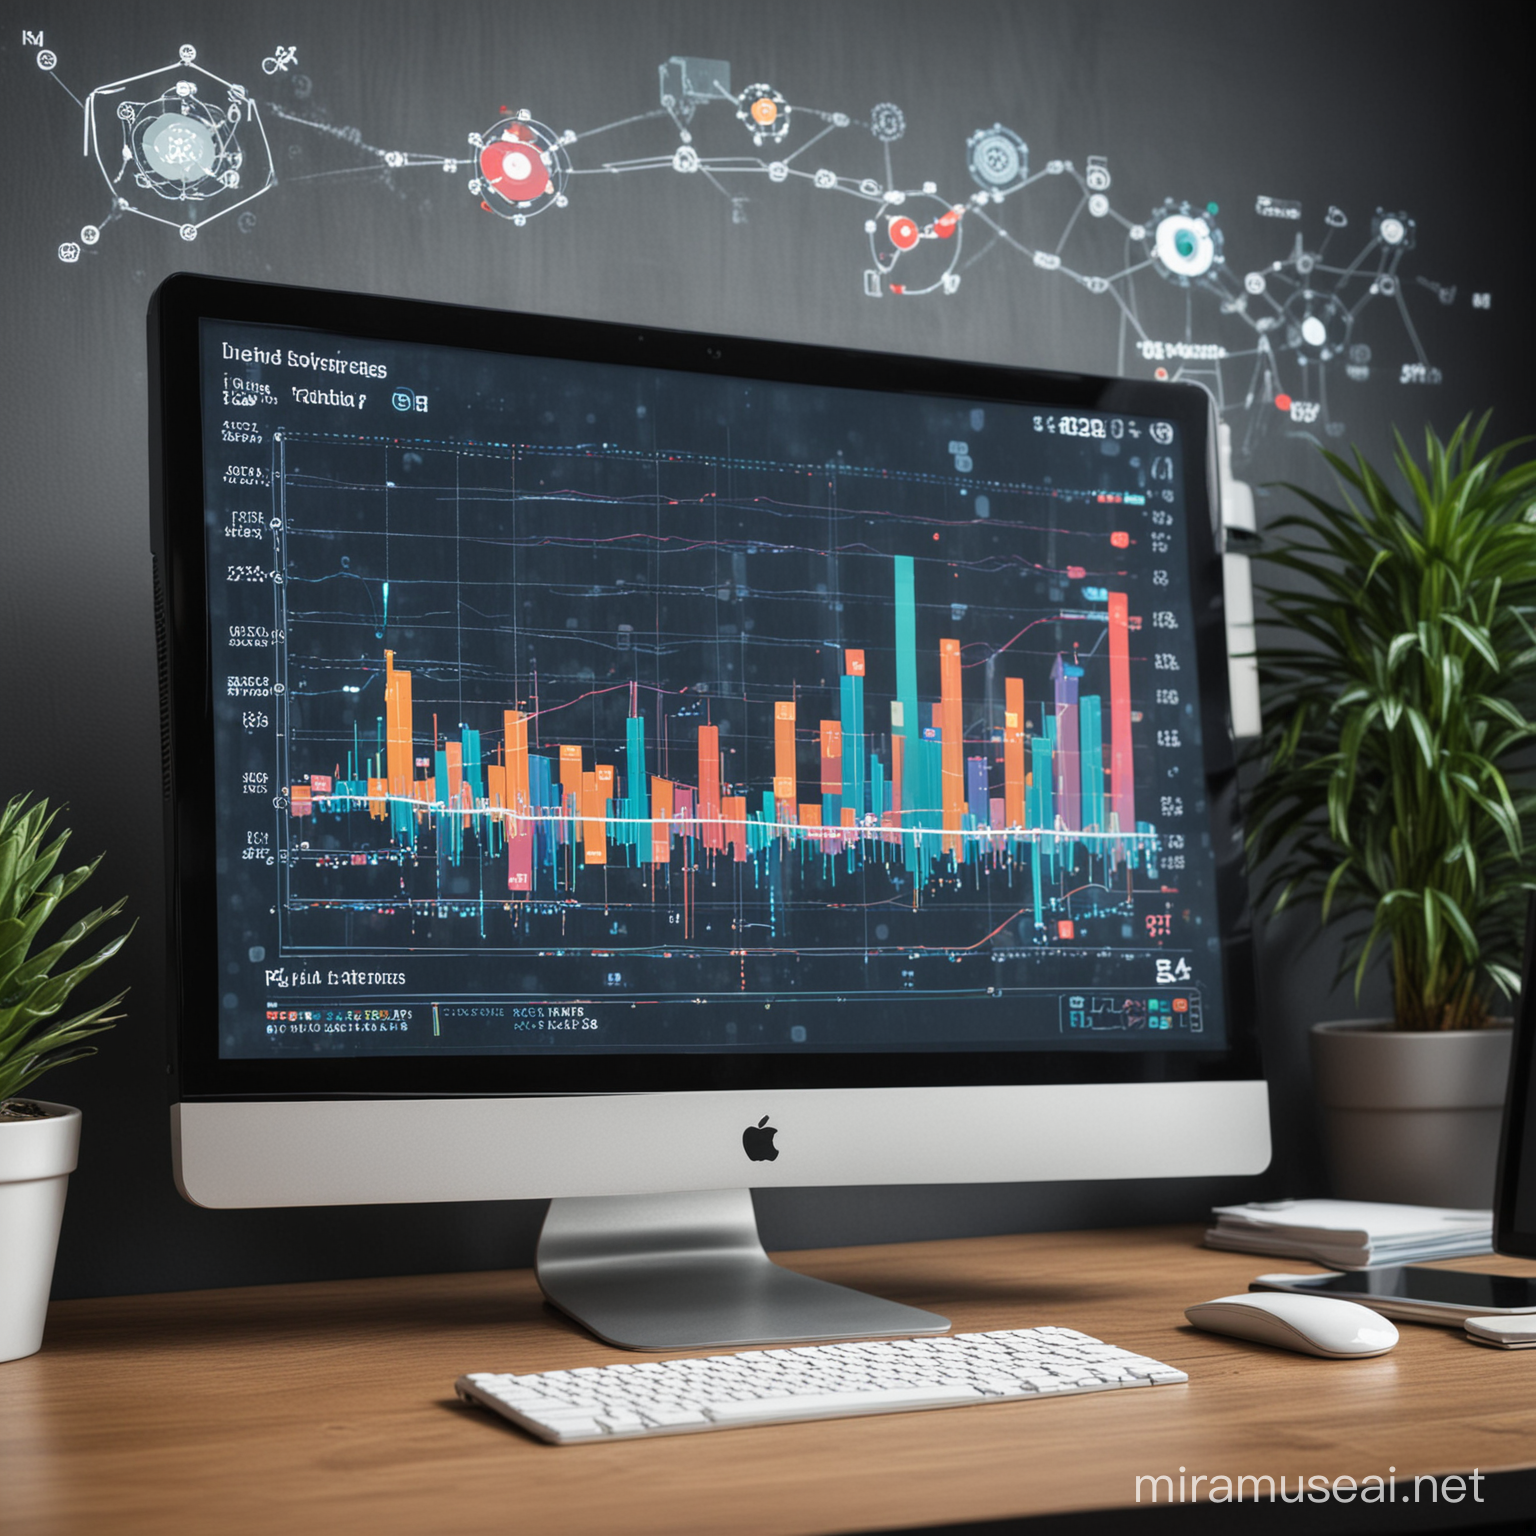 Una gráfica de tendencias ascendentes en una pantalla de computadora, con íconos de IA y datos alrededor, representando el análisis predictivo en marketing digital.